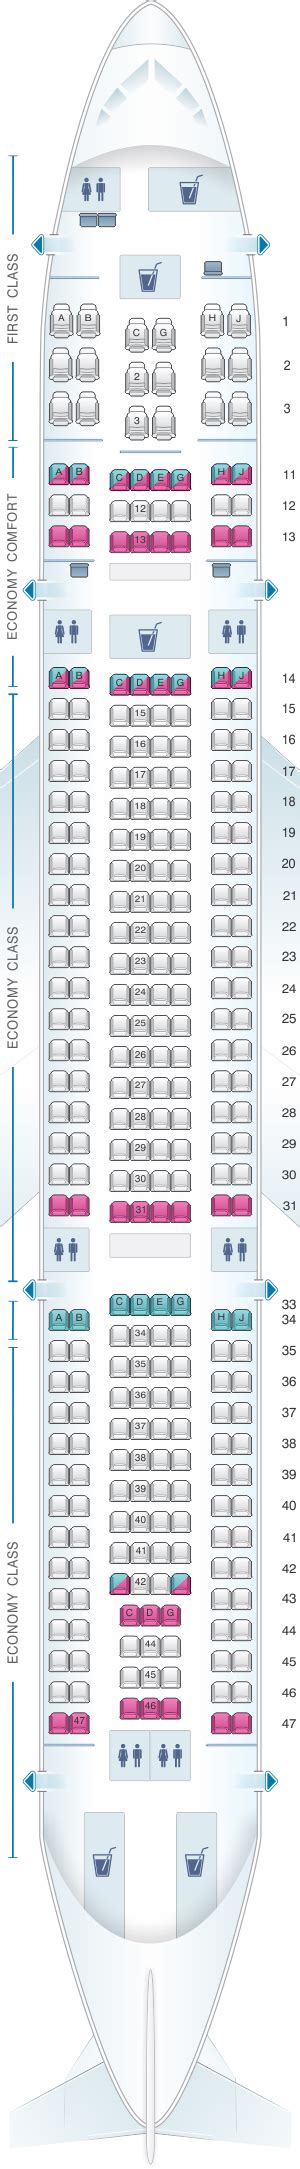 Plan De Cabine Hawaiian Airlines Airbus A330 200 Seatmaestrofr